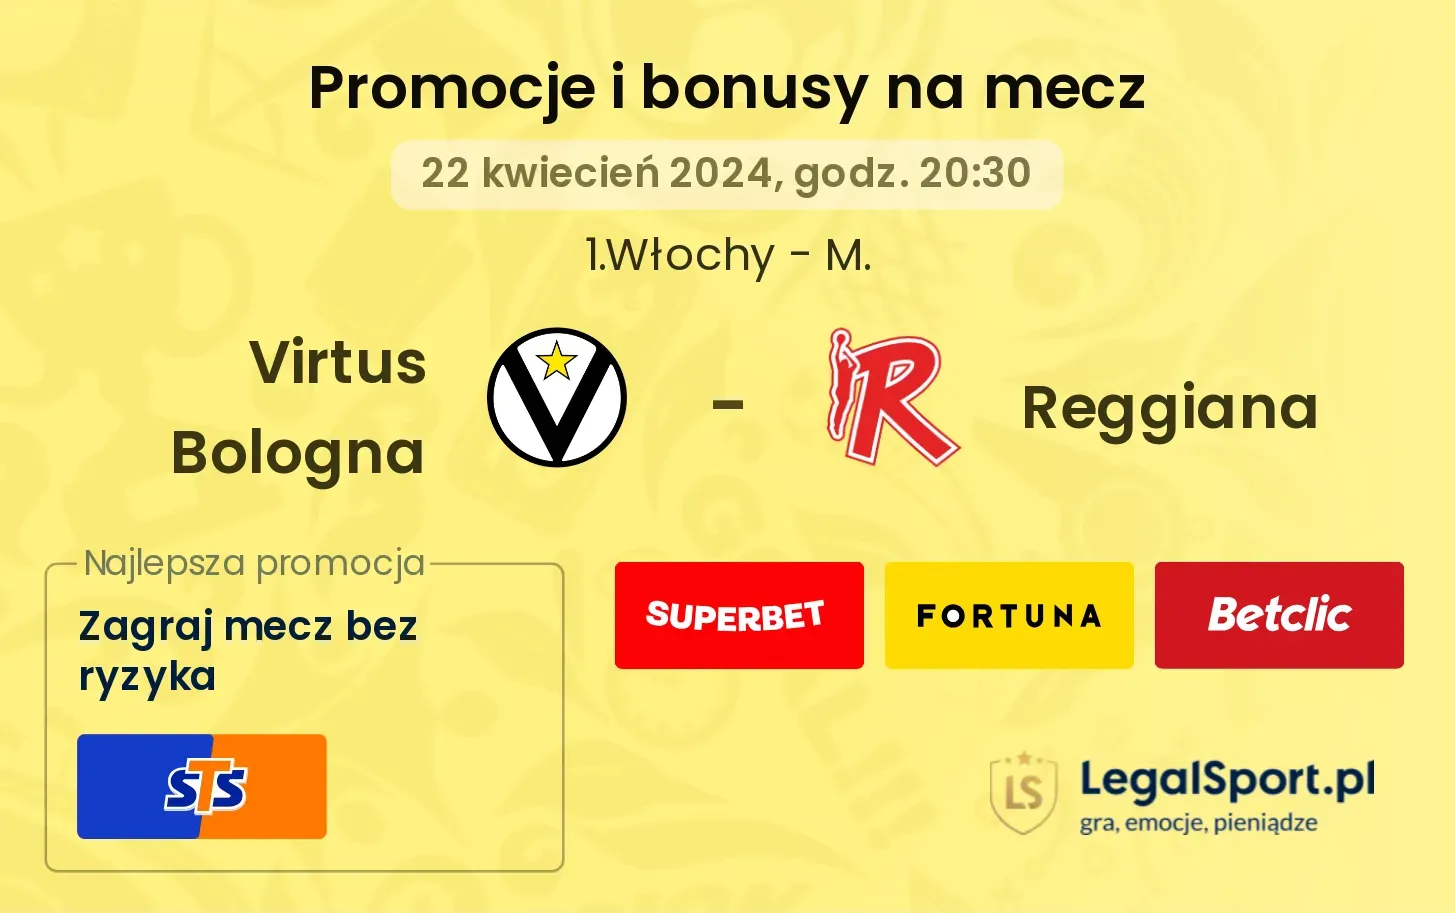 Virtus Bologna - Reggiana promocje bonusy na mecz